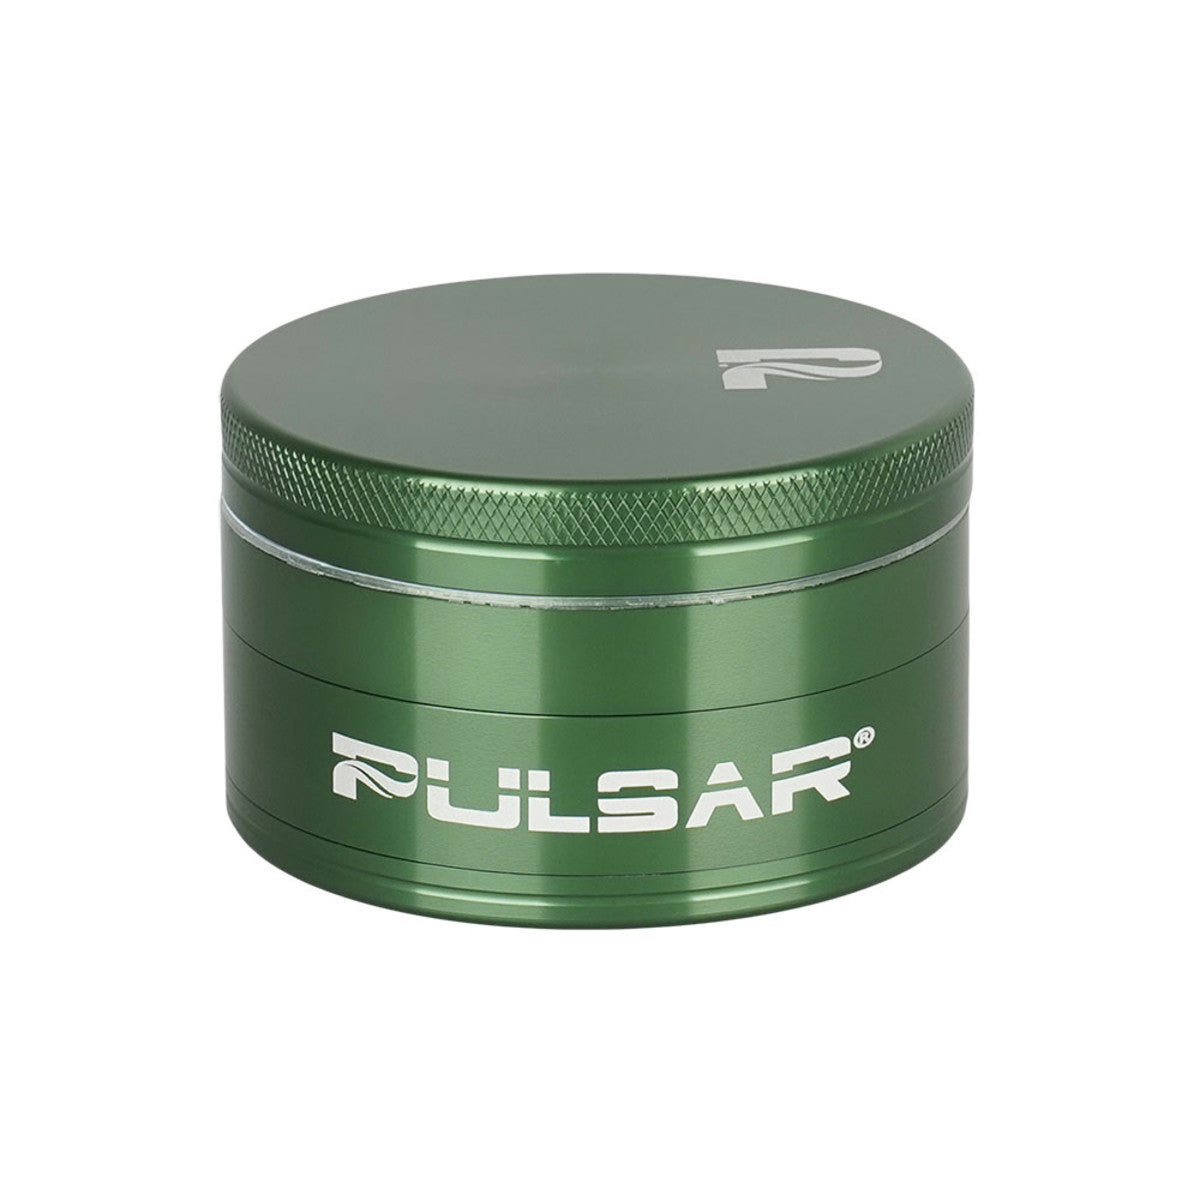 Pulsar Solid Top Aluminum Grinder-GR760- 4pc / 2.5"